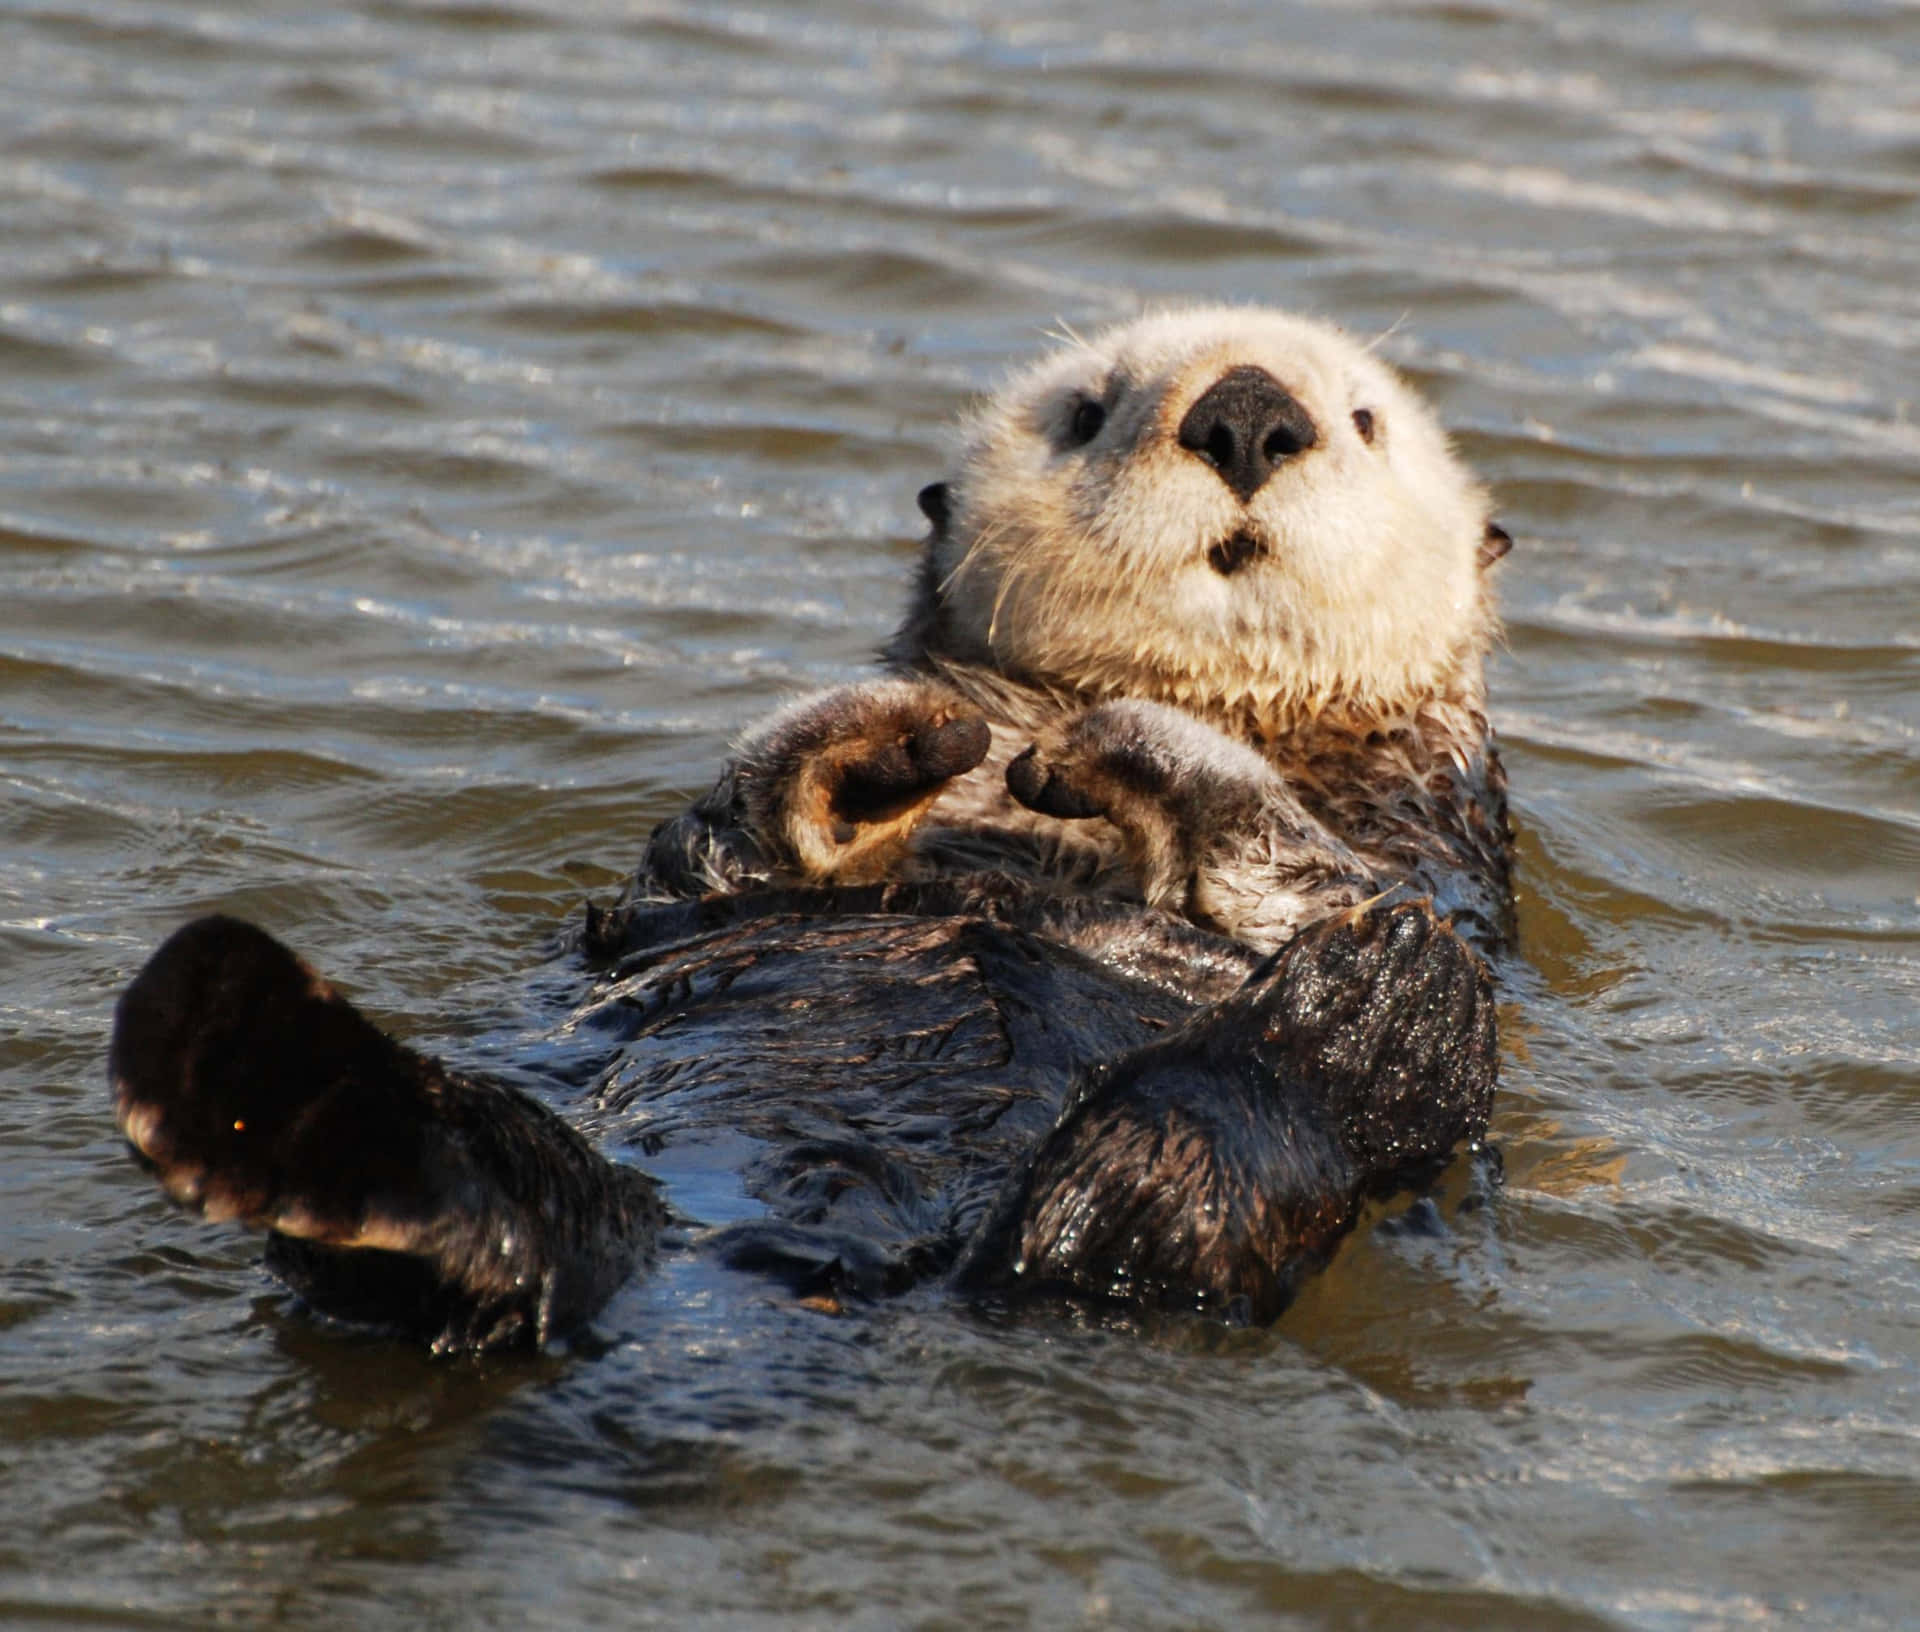 A playful otter